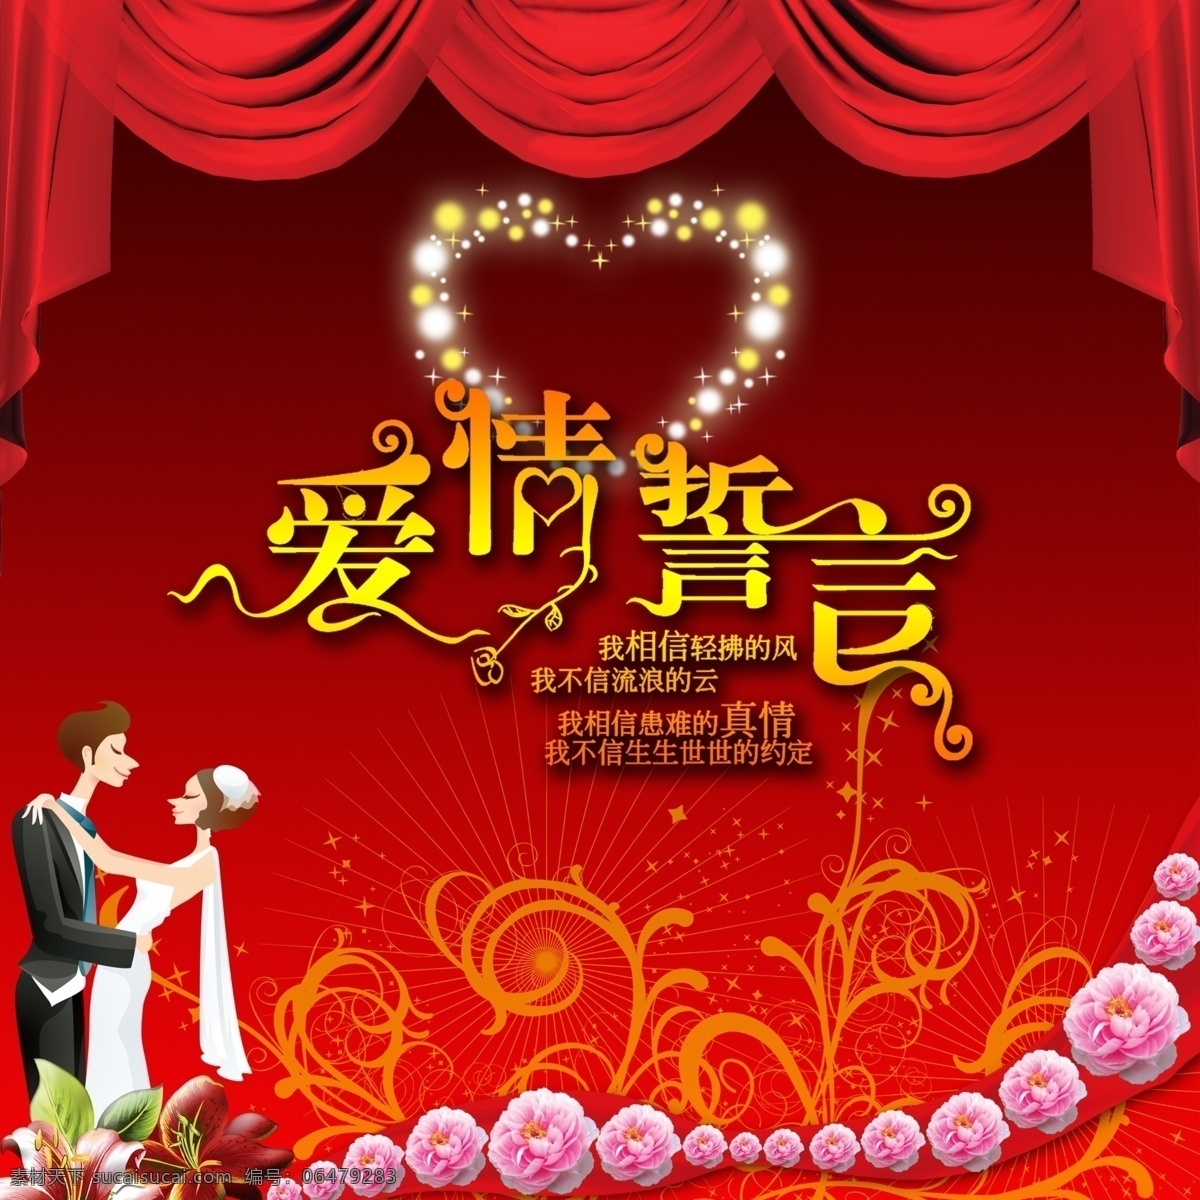 广告设计模板 红色绸带 花朵 结婚庆典 结婚展板 卡通人物 平面设计 特殊字体 字体设计 黑红渐变背景 心形星光 源文件 海报背景图